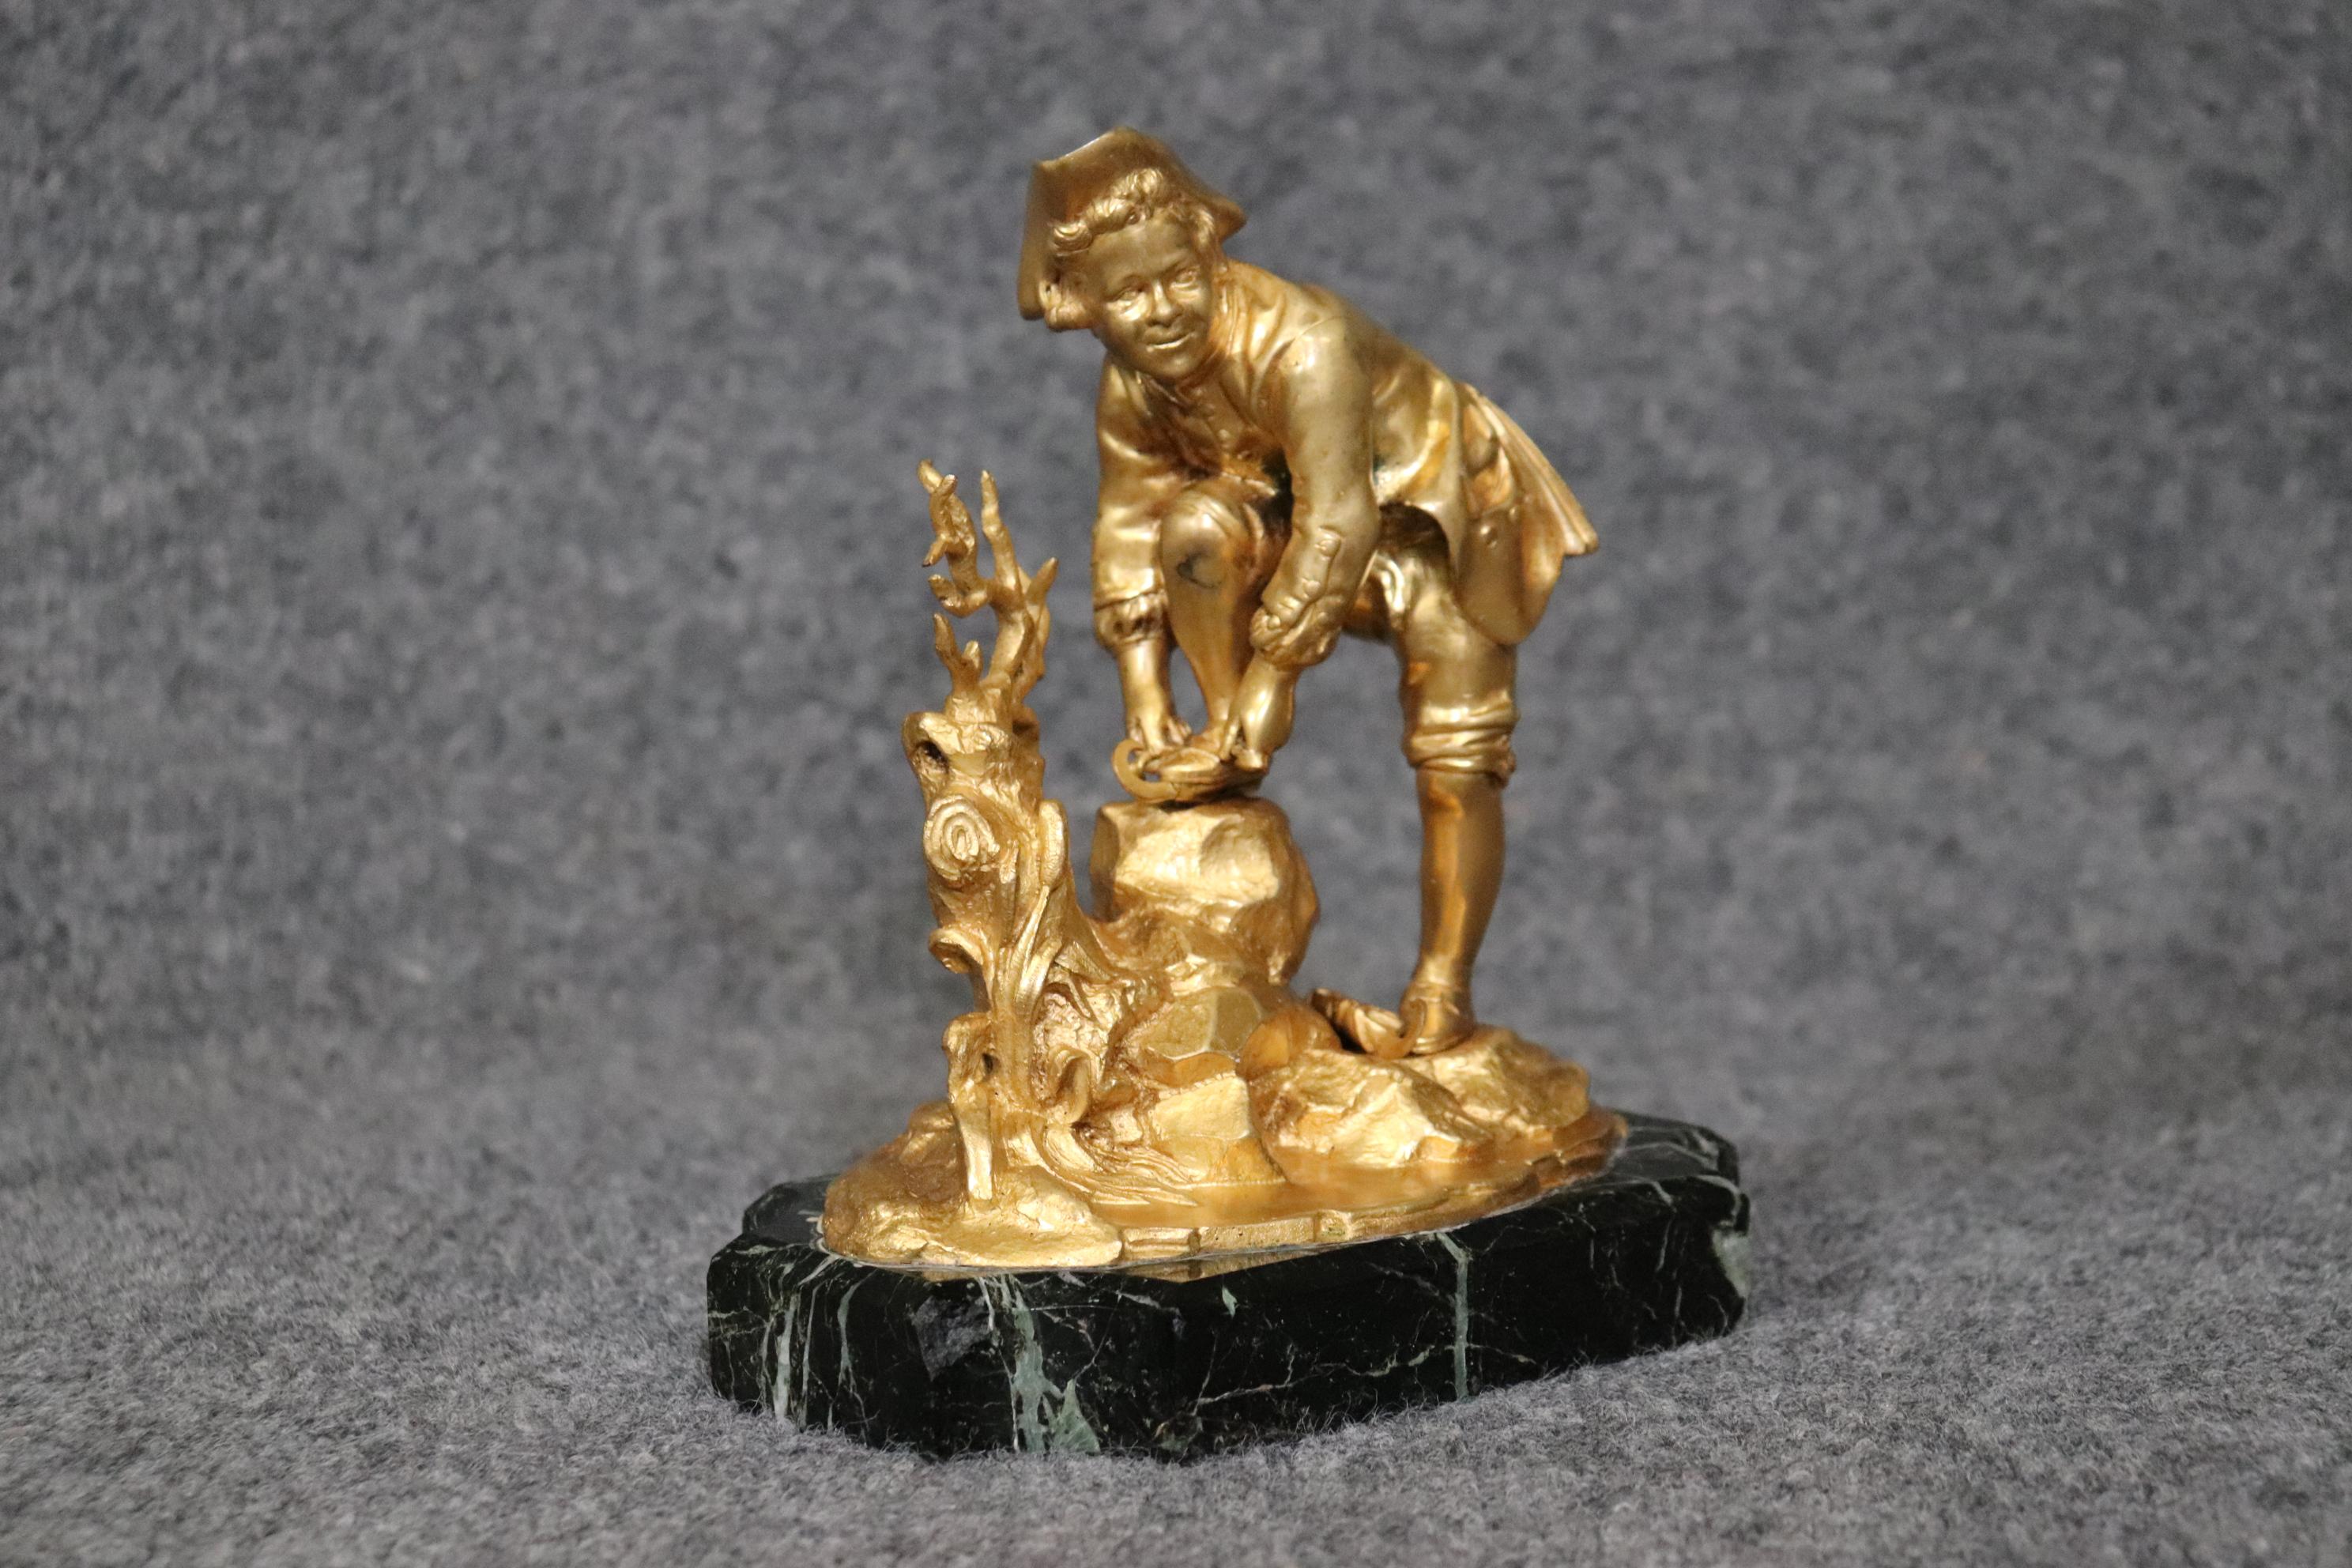 Abmessungen- H: 12 1/2in B: 12in T: 4in 

Diese russische Bronze-Ormolu-Skulptur eines Jungen aus dem späten 19. Jahrhundert ist von höchster Qualität! Diese antike Skulptur verfügt über einen schönen Marmorsockel sowie eine unglaublich detaillierte